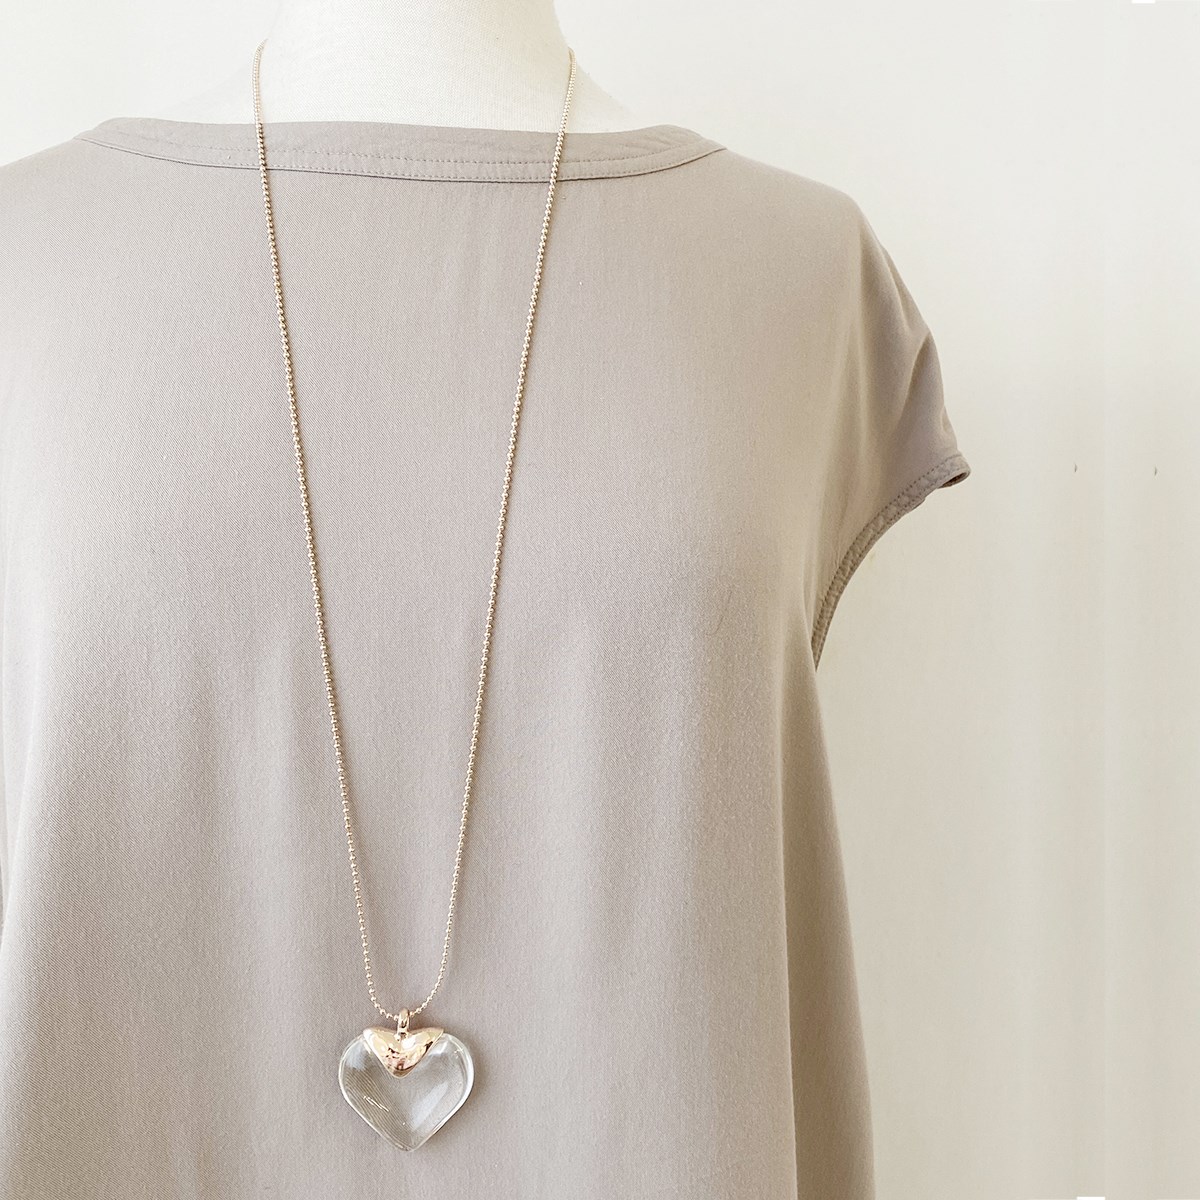 Collier long avec pendentif coeur - 1442 - 